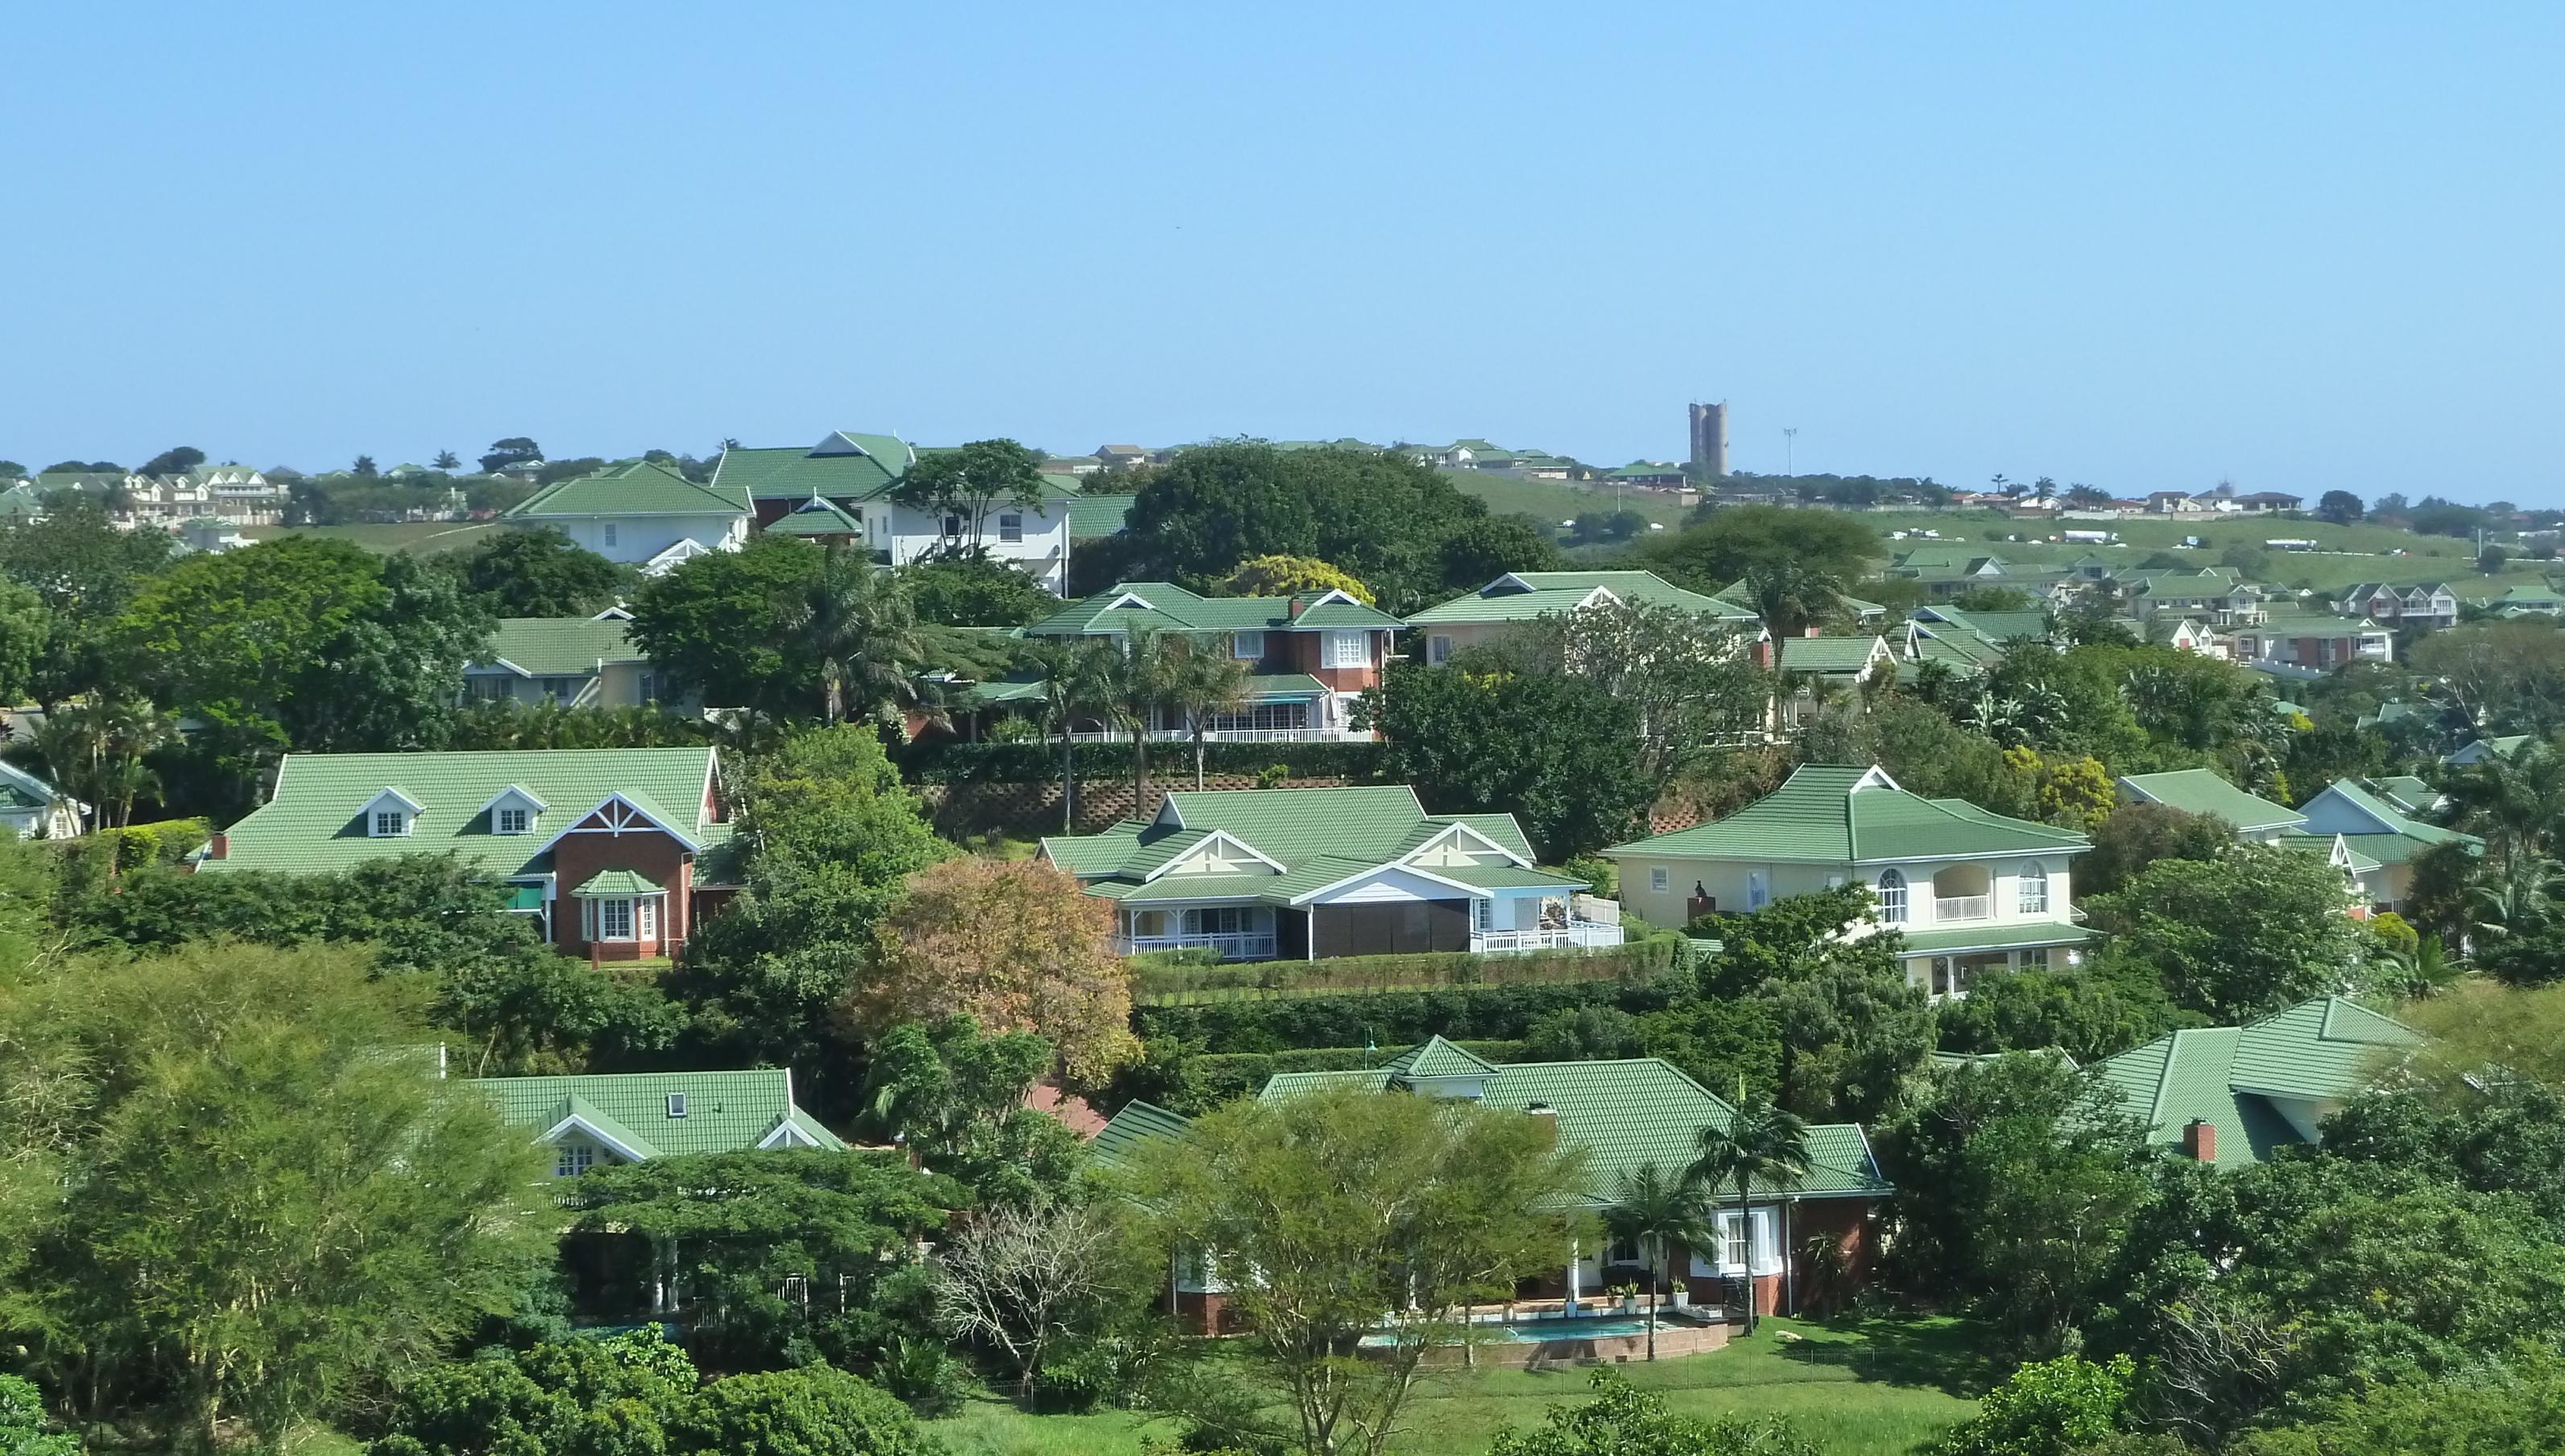 Großzügige Häuser mit uniform-grünen Dächern in einer Grünanlage, der Himmel ist blau